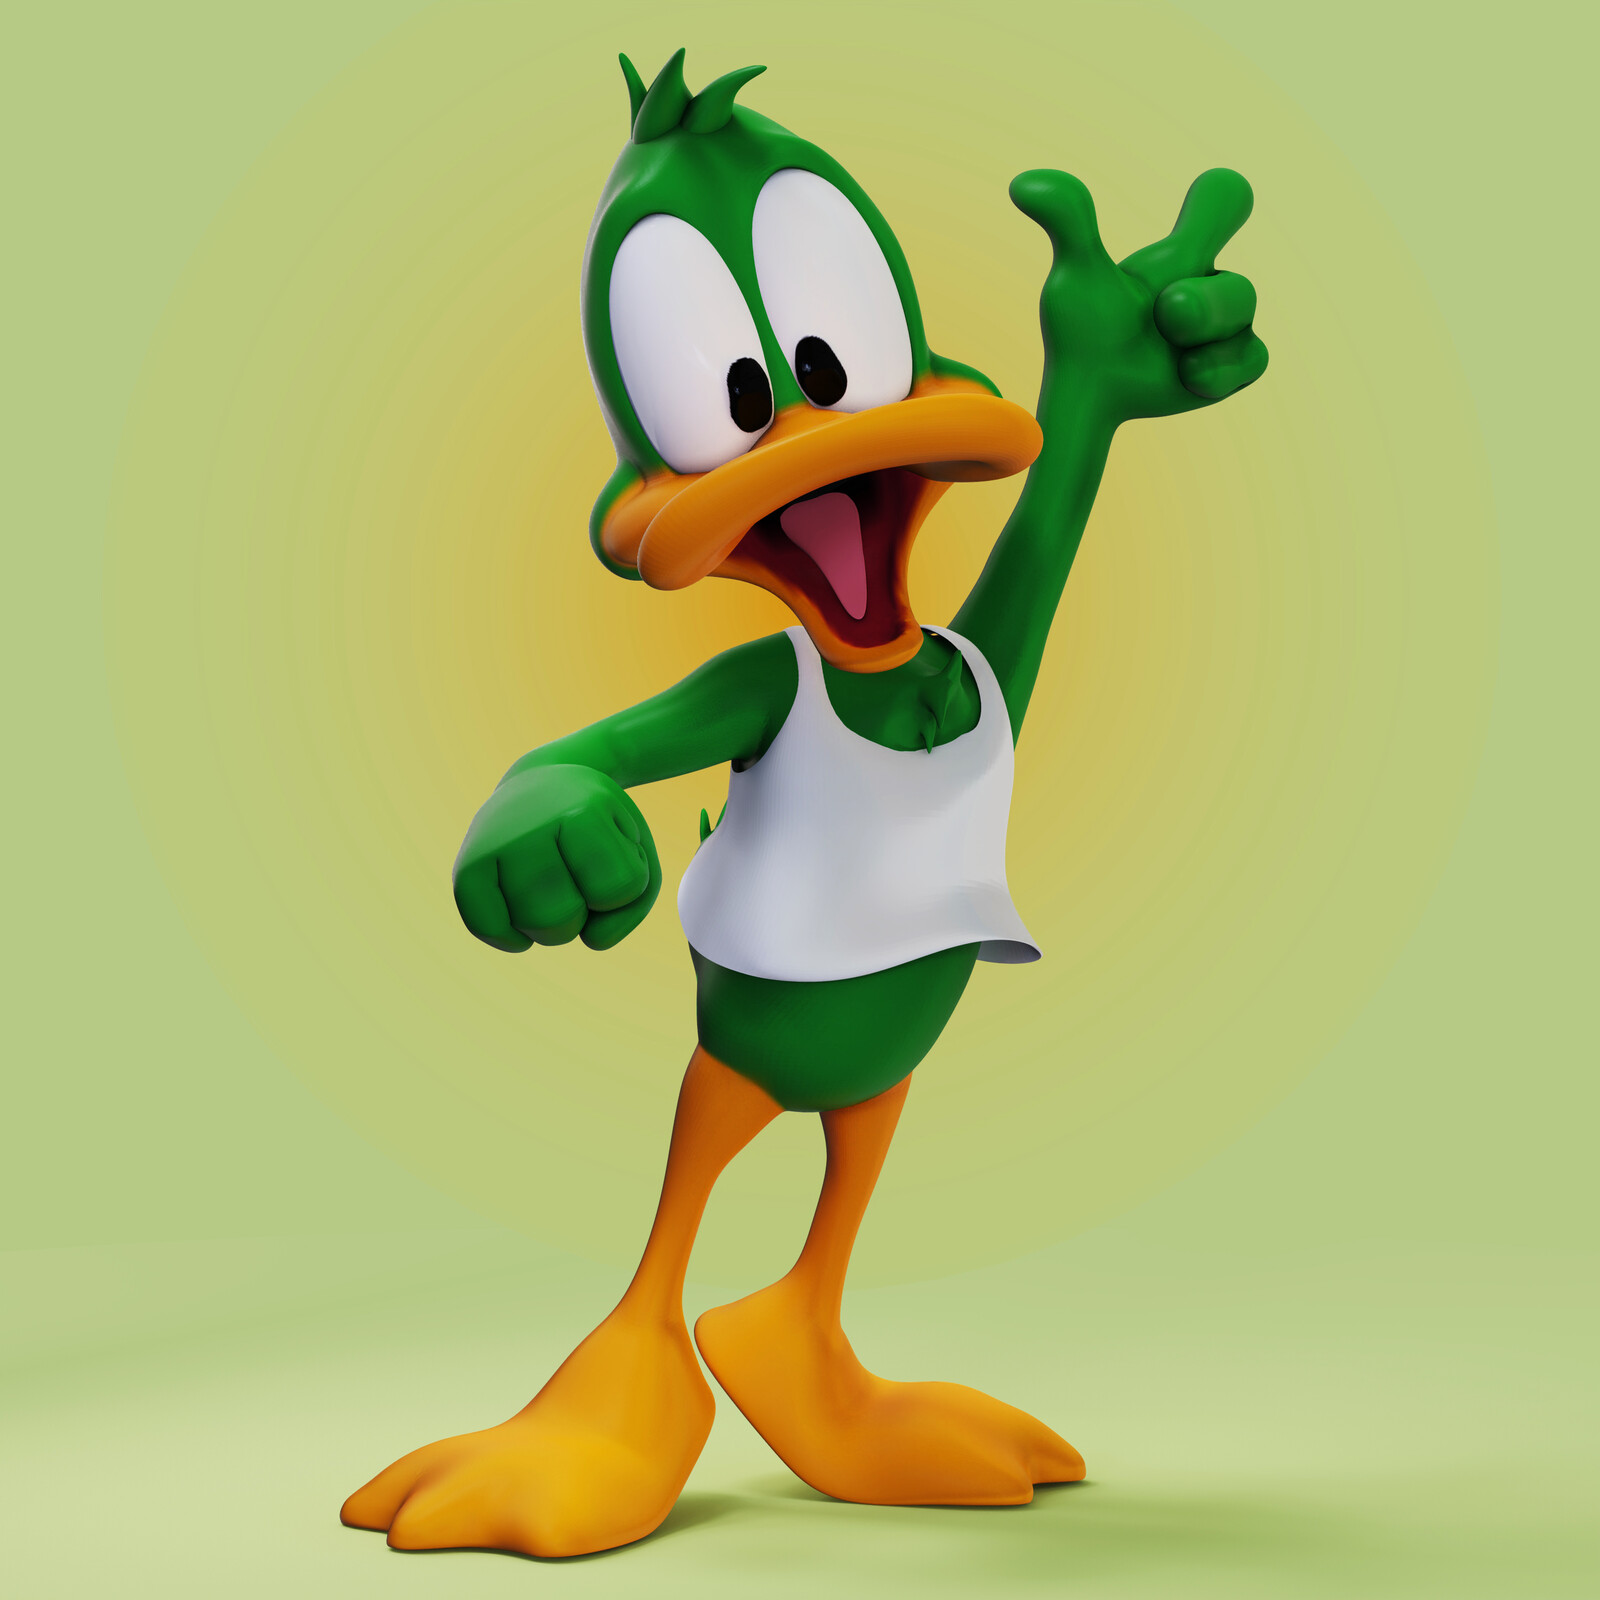 Plucky Duck (Fan Art)